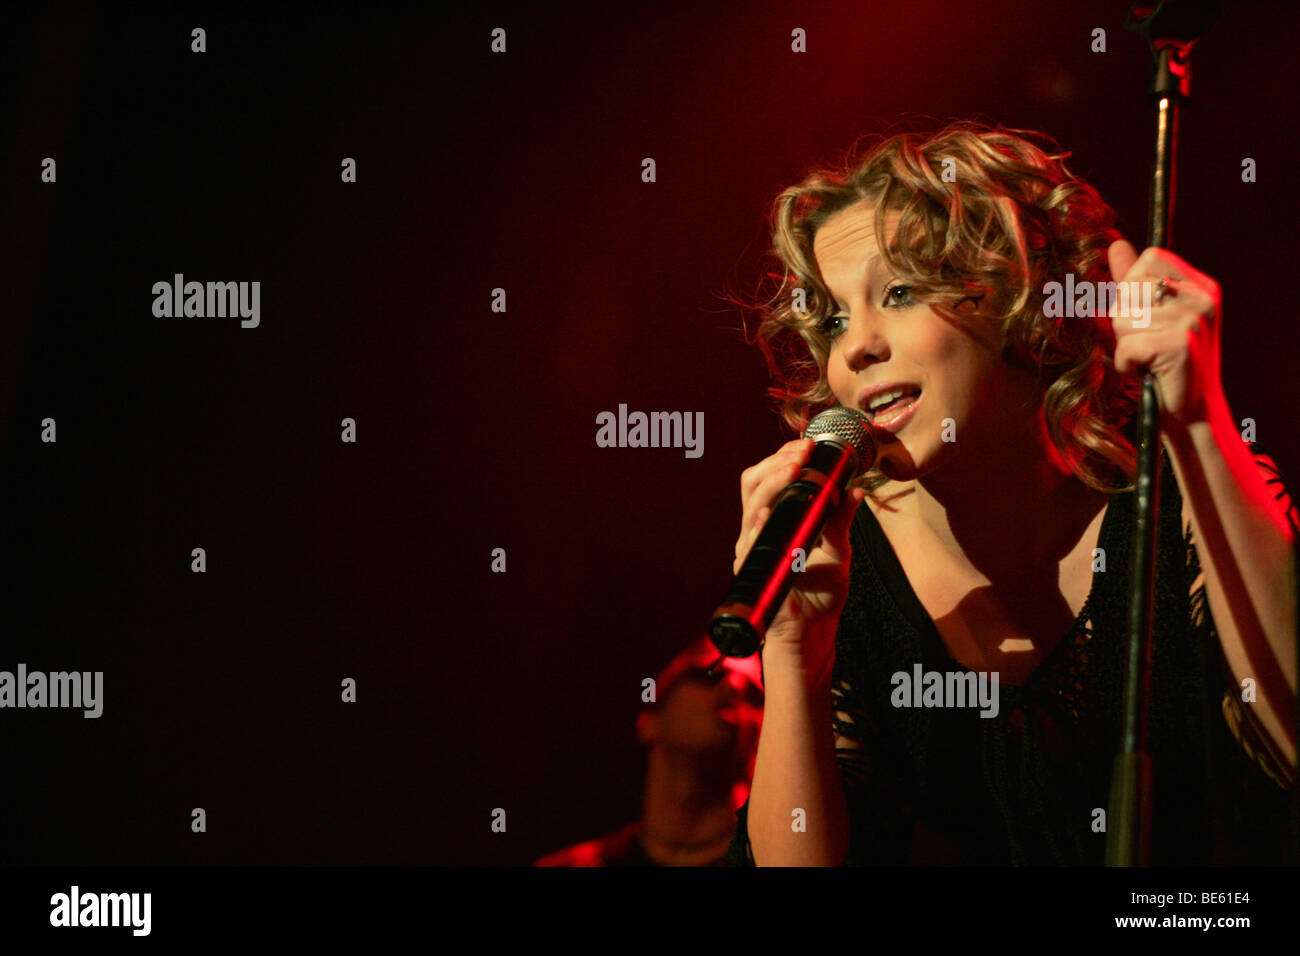 LaFee, deutsche Pop-Sängerin, live im Club X-Tra in Zürich, Schweiz  Stockfotografie - Alamy